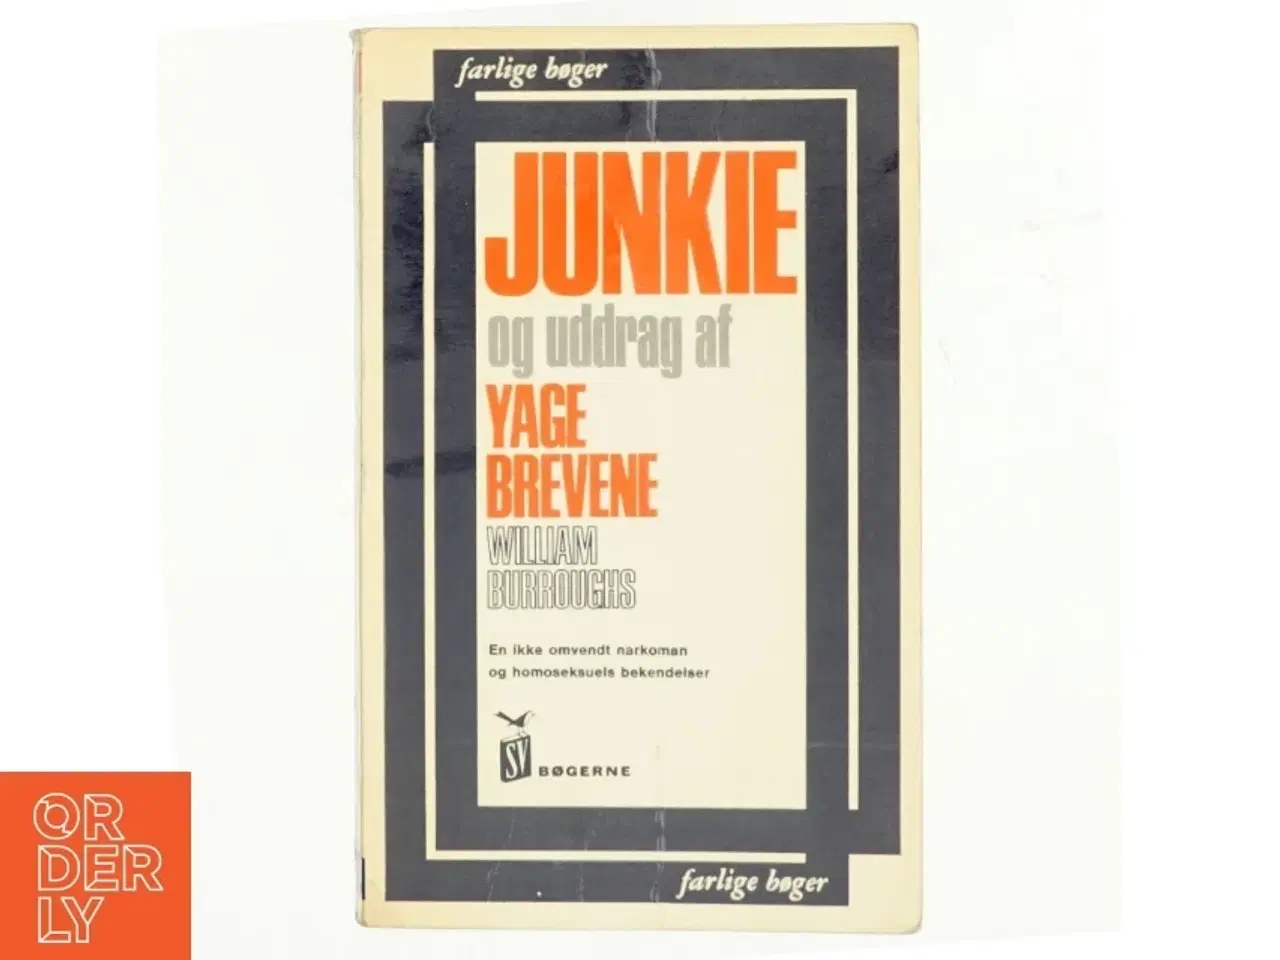 Billede 1 - Junkie og uddrag af Yage brevene af William S. Burroughs (bog)